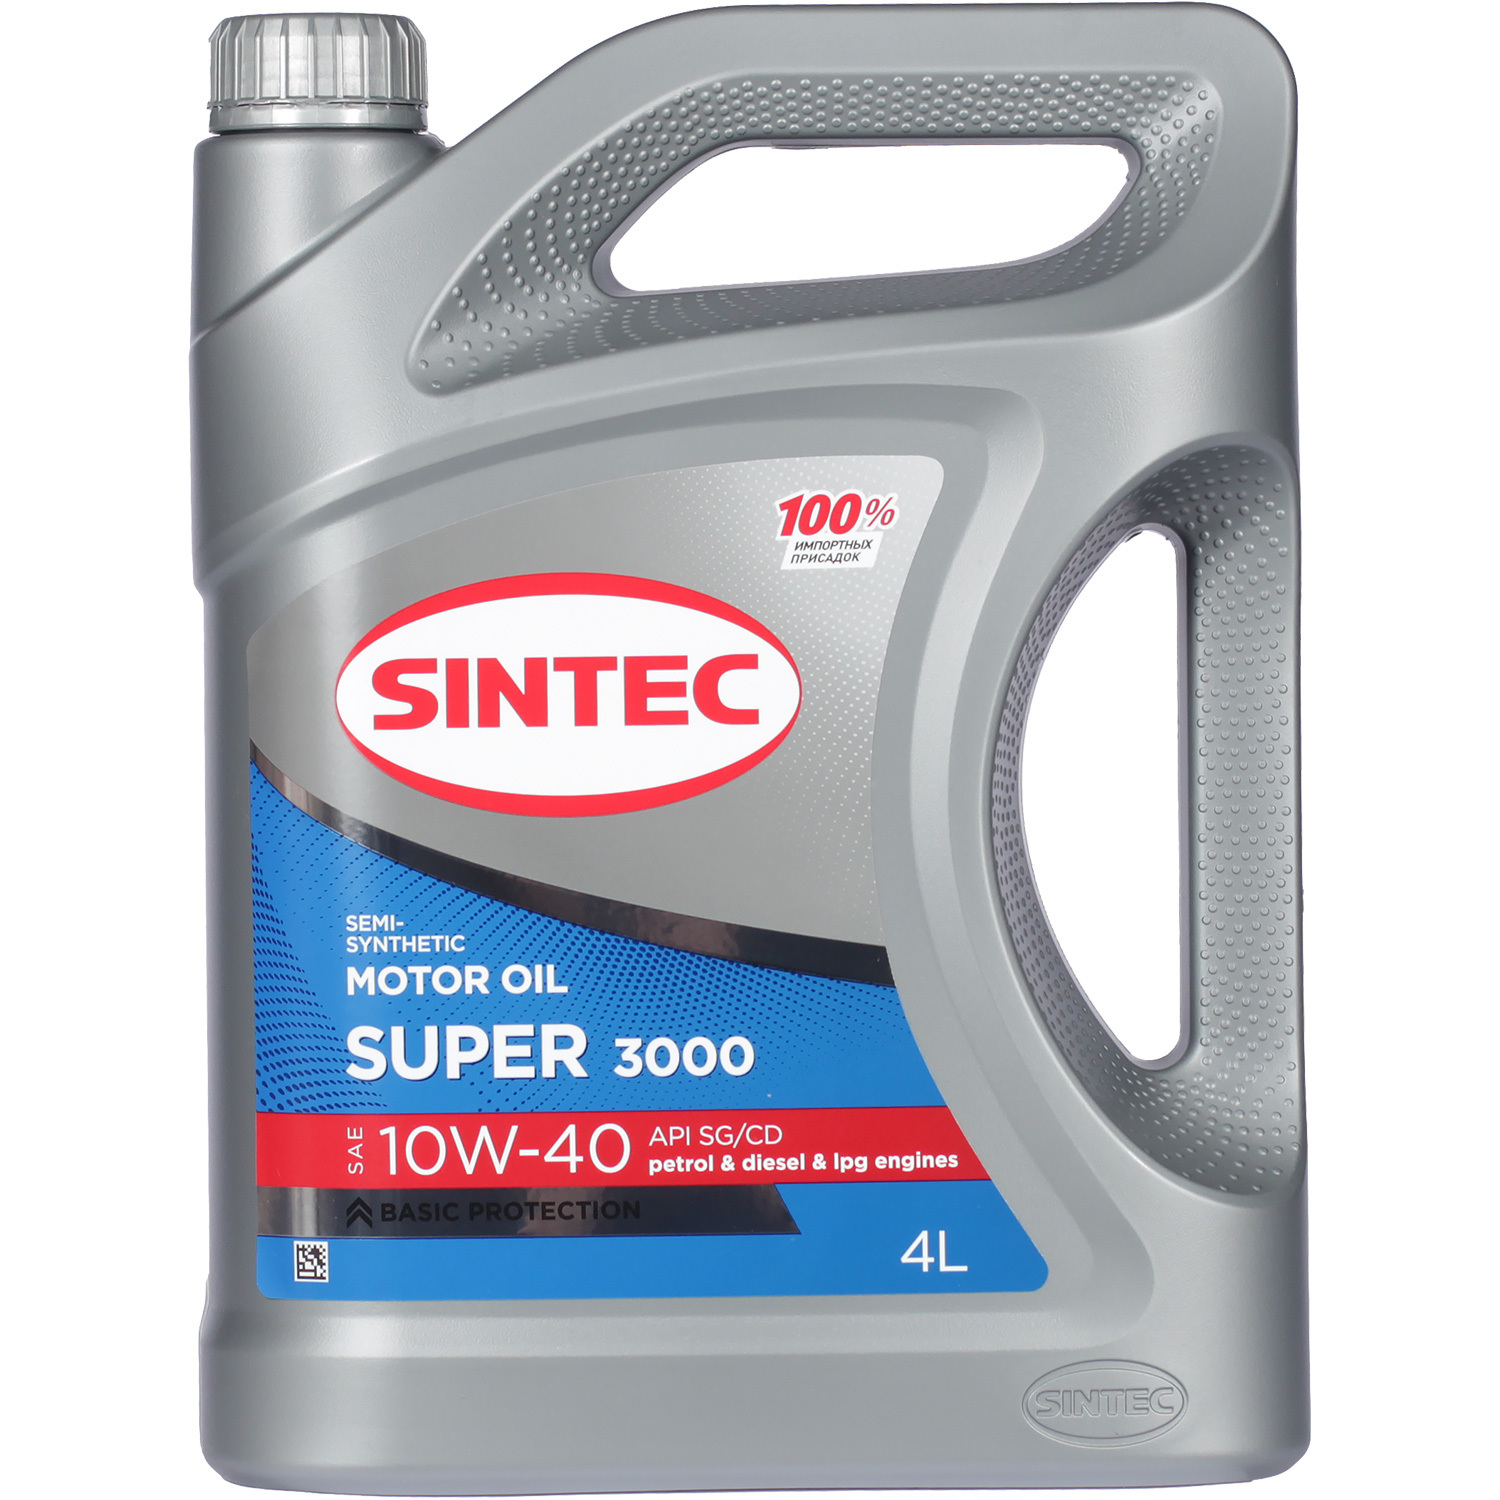 Sintec Моторное масло Sintec Super 3000 10W-40, 4 л масло моторное sintec super 10w 40 sg cd п синтетическое 801893 1 л